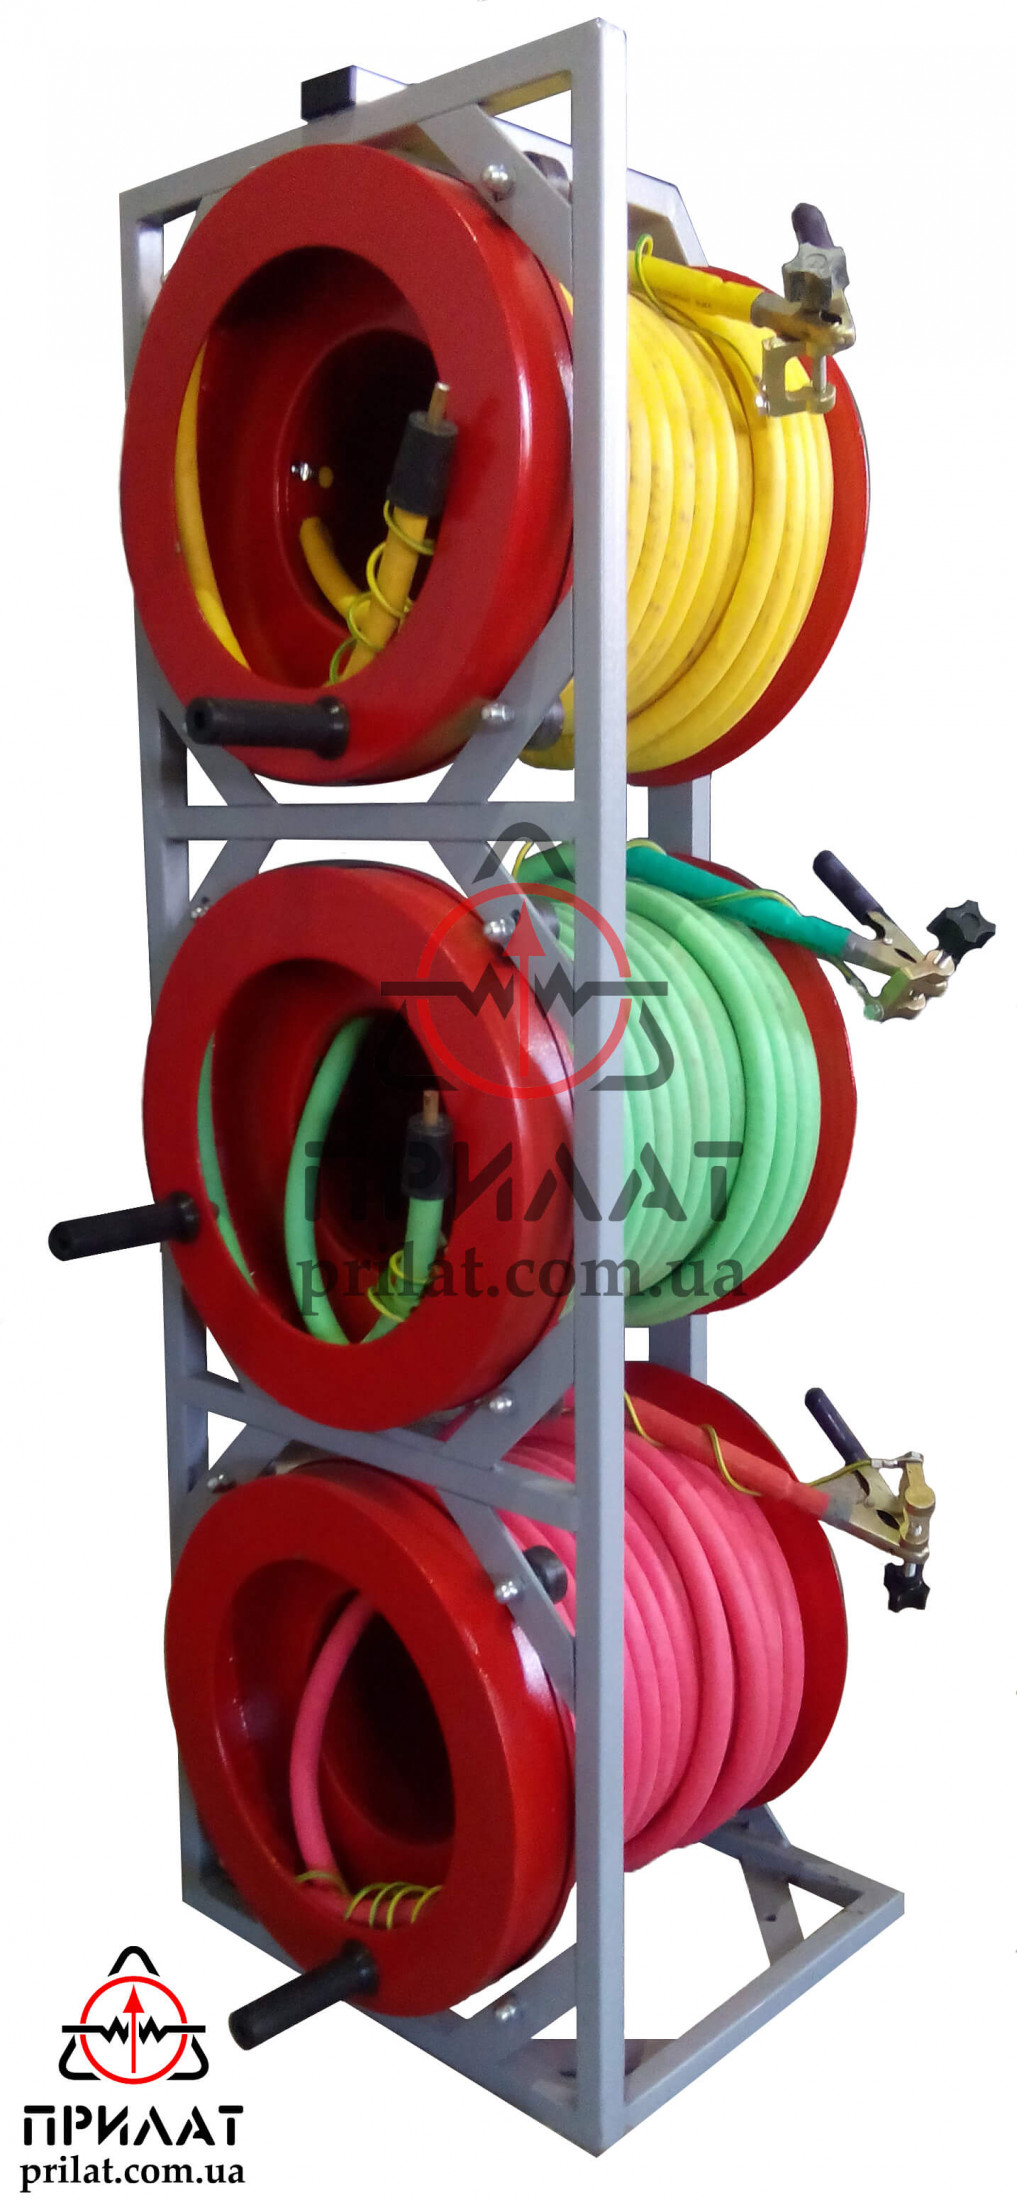 Блок барабанов с высоковольтными кабелями ПВВЭР-60-3,5